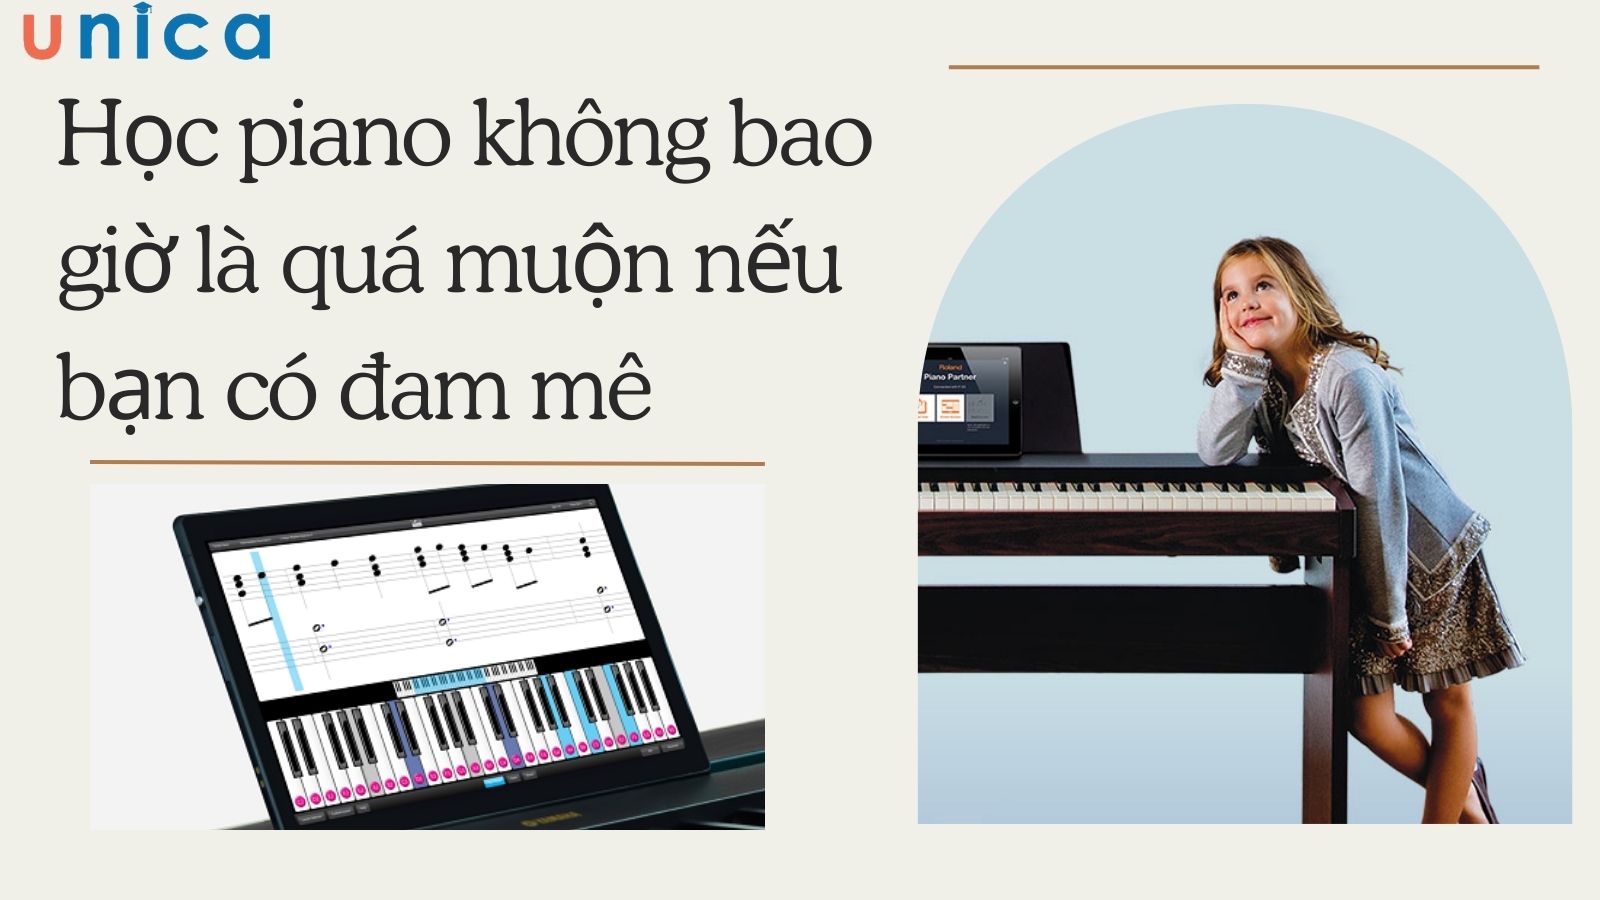 Học piano không bao giờ là quá muộn nếu bạn có niềm đam mê